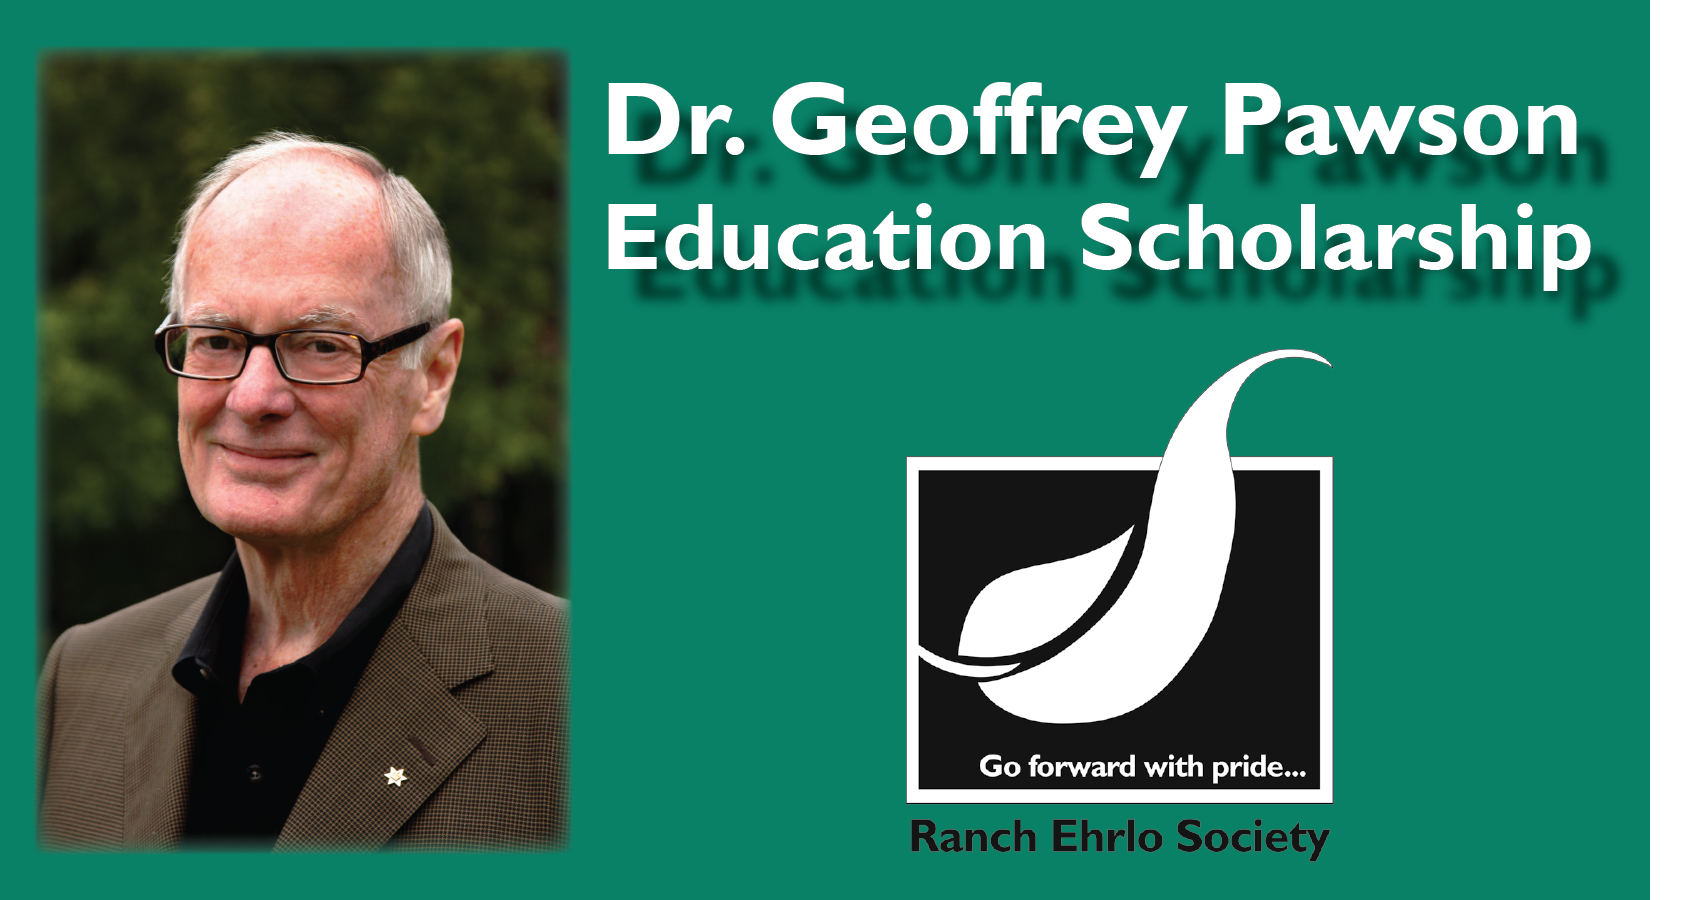 Dr. Geoffrey Pawson Education Scholarship